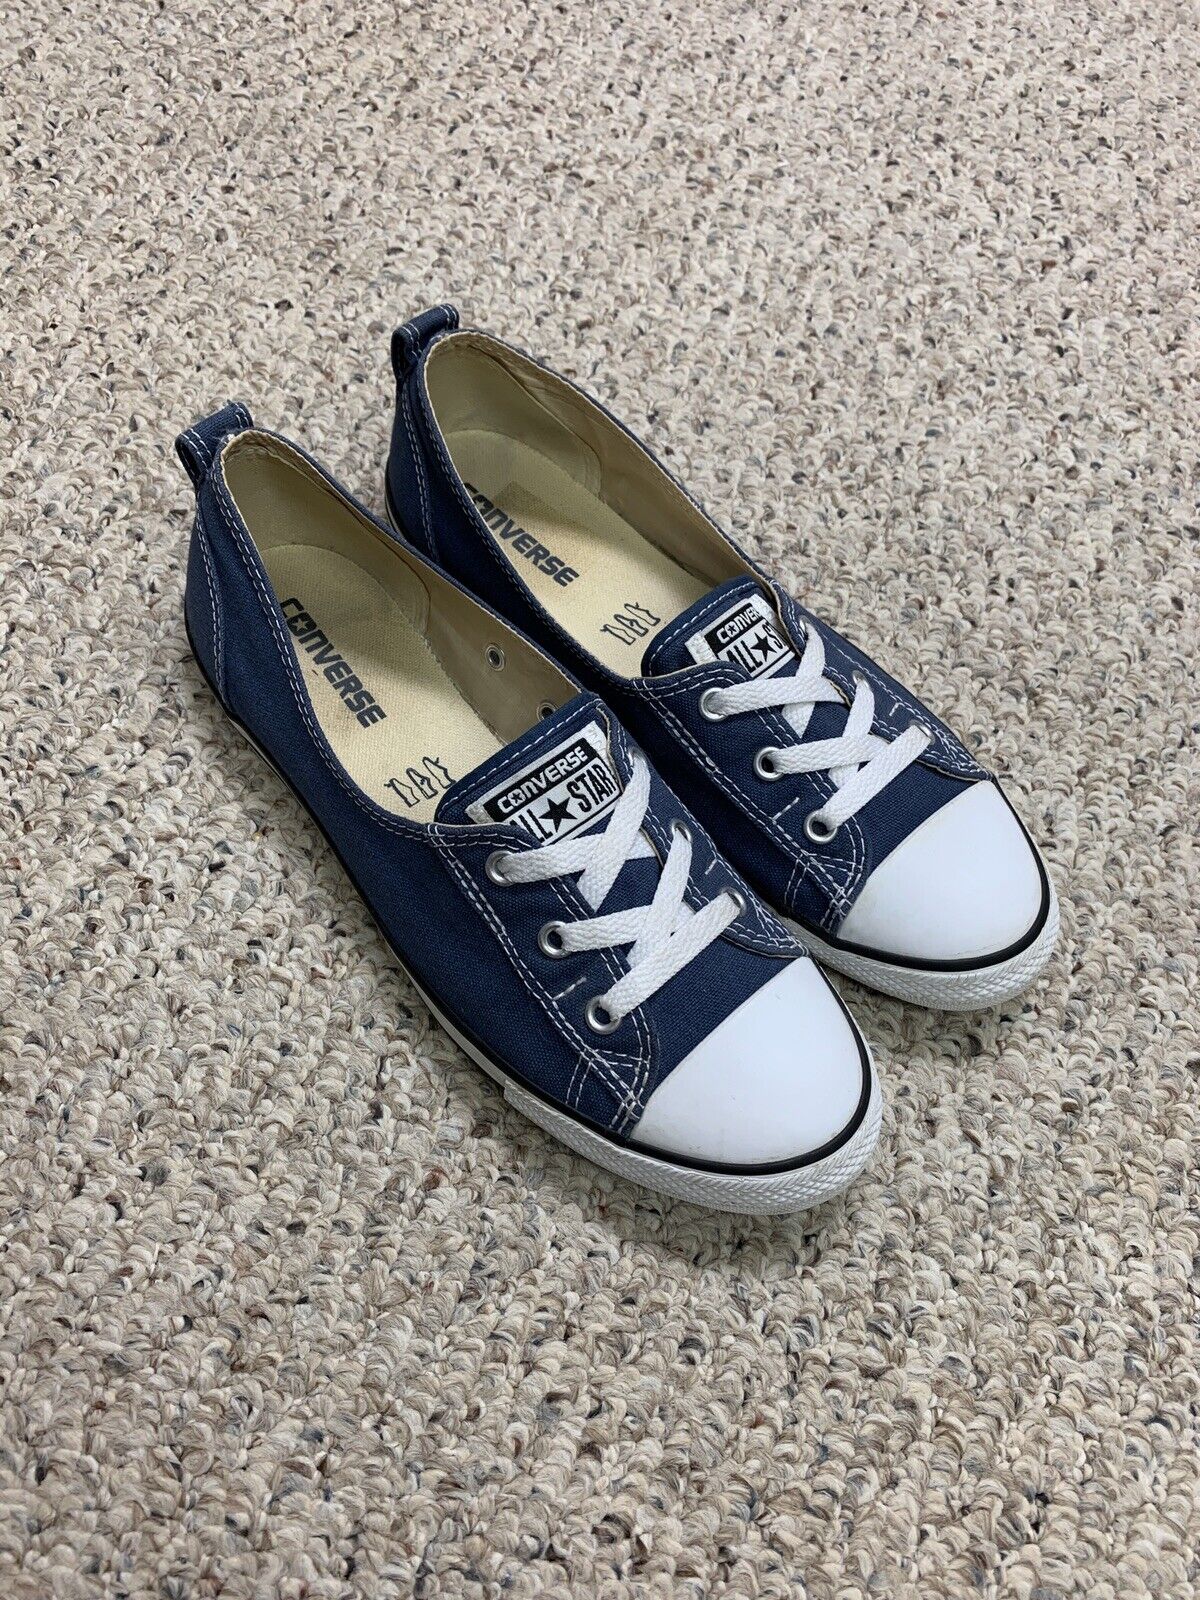 cuenco Votación Concesión Women's Converse Ballet Slip On Sneakers Navy Blue Size 9.5 ORIGINAL Low  Flats | eBay